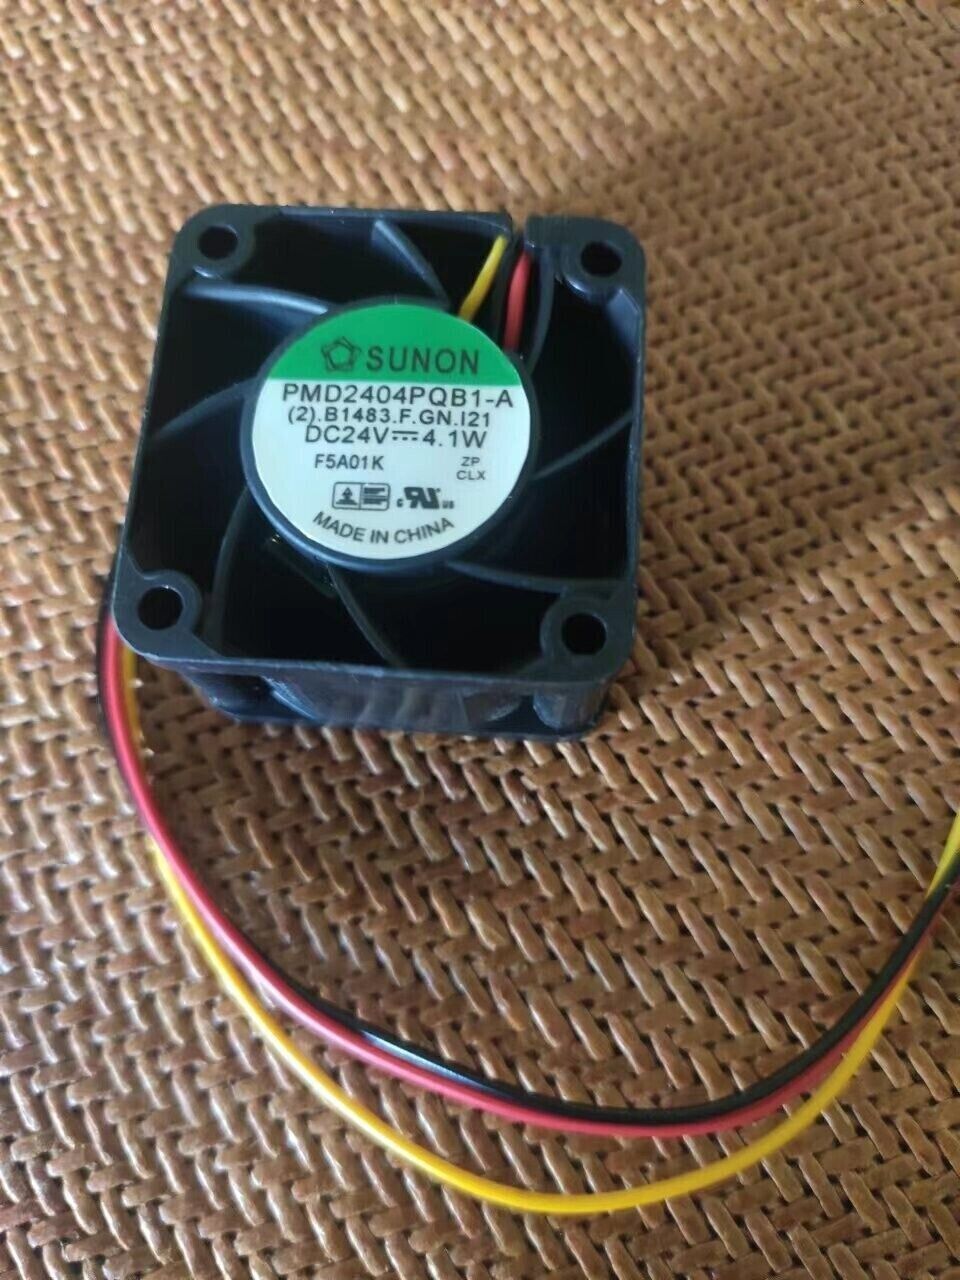 1 PCS SUNON Fan PMD2404PQB1-A DC24V 4.1W 4cm 40*28MM 3 wire inverter fan